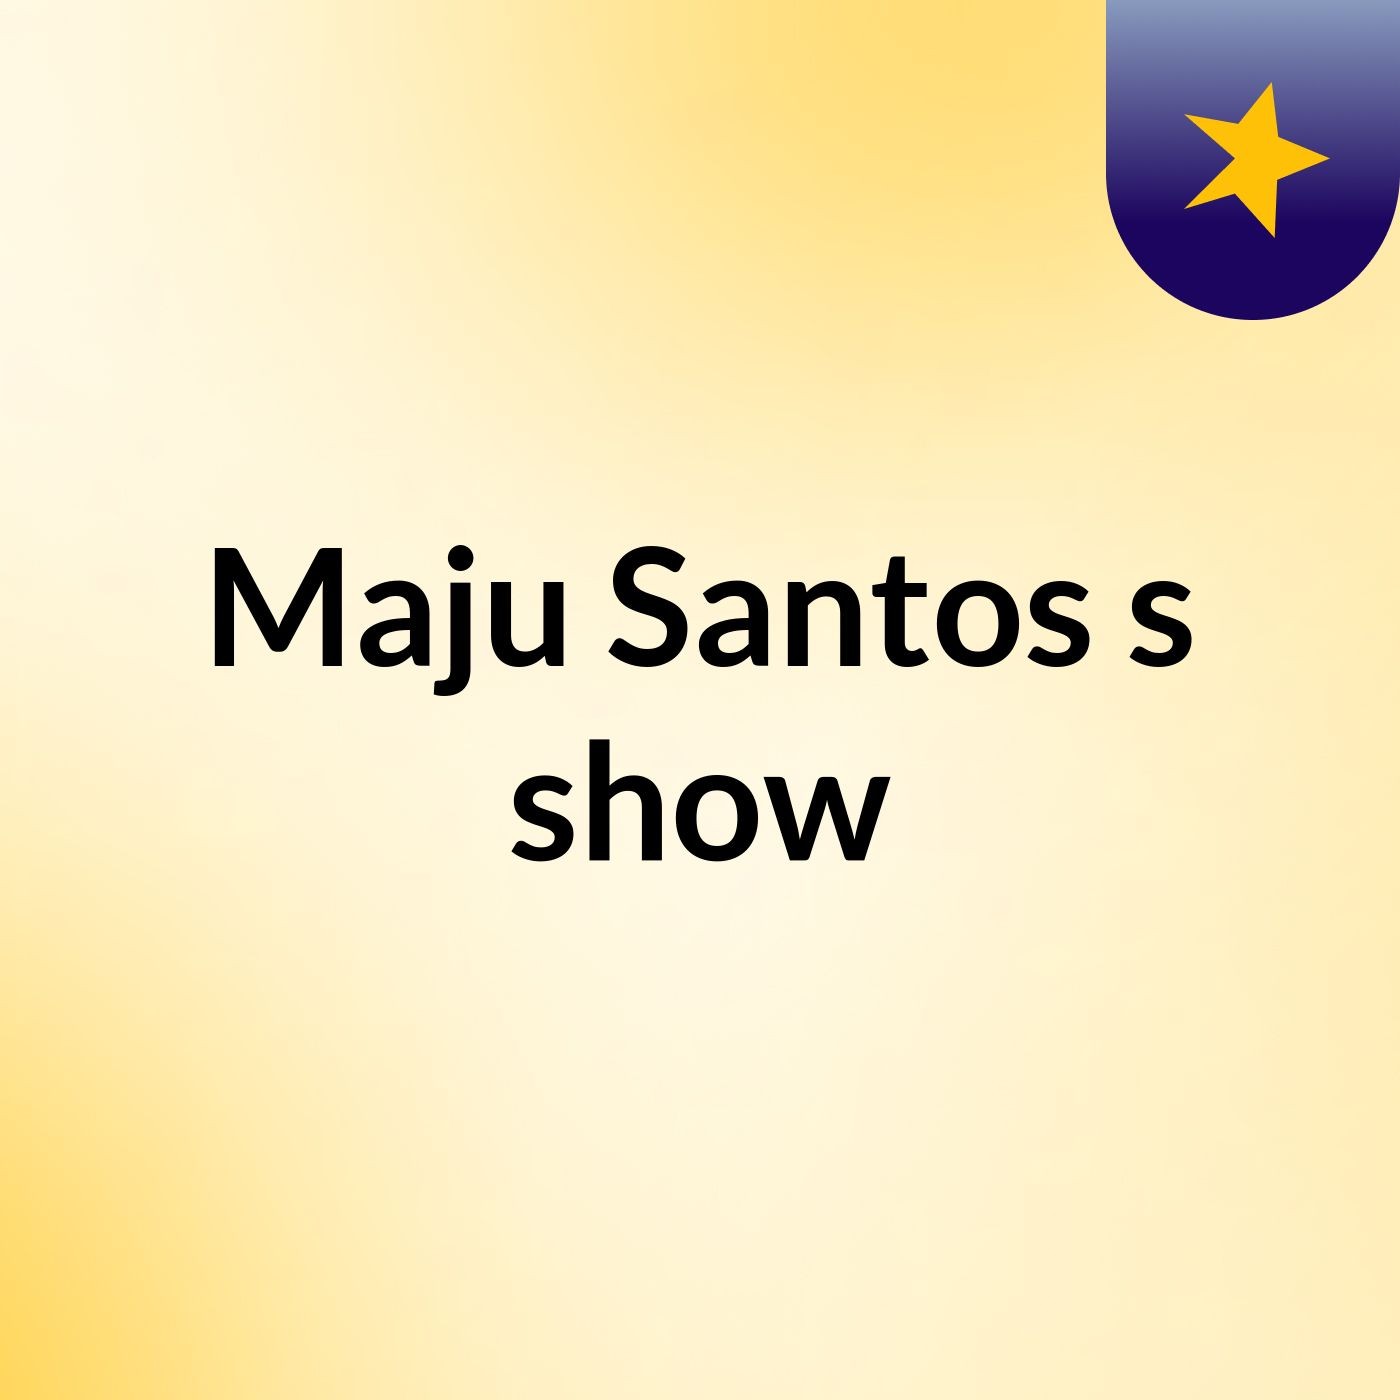 Maju Santos's show